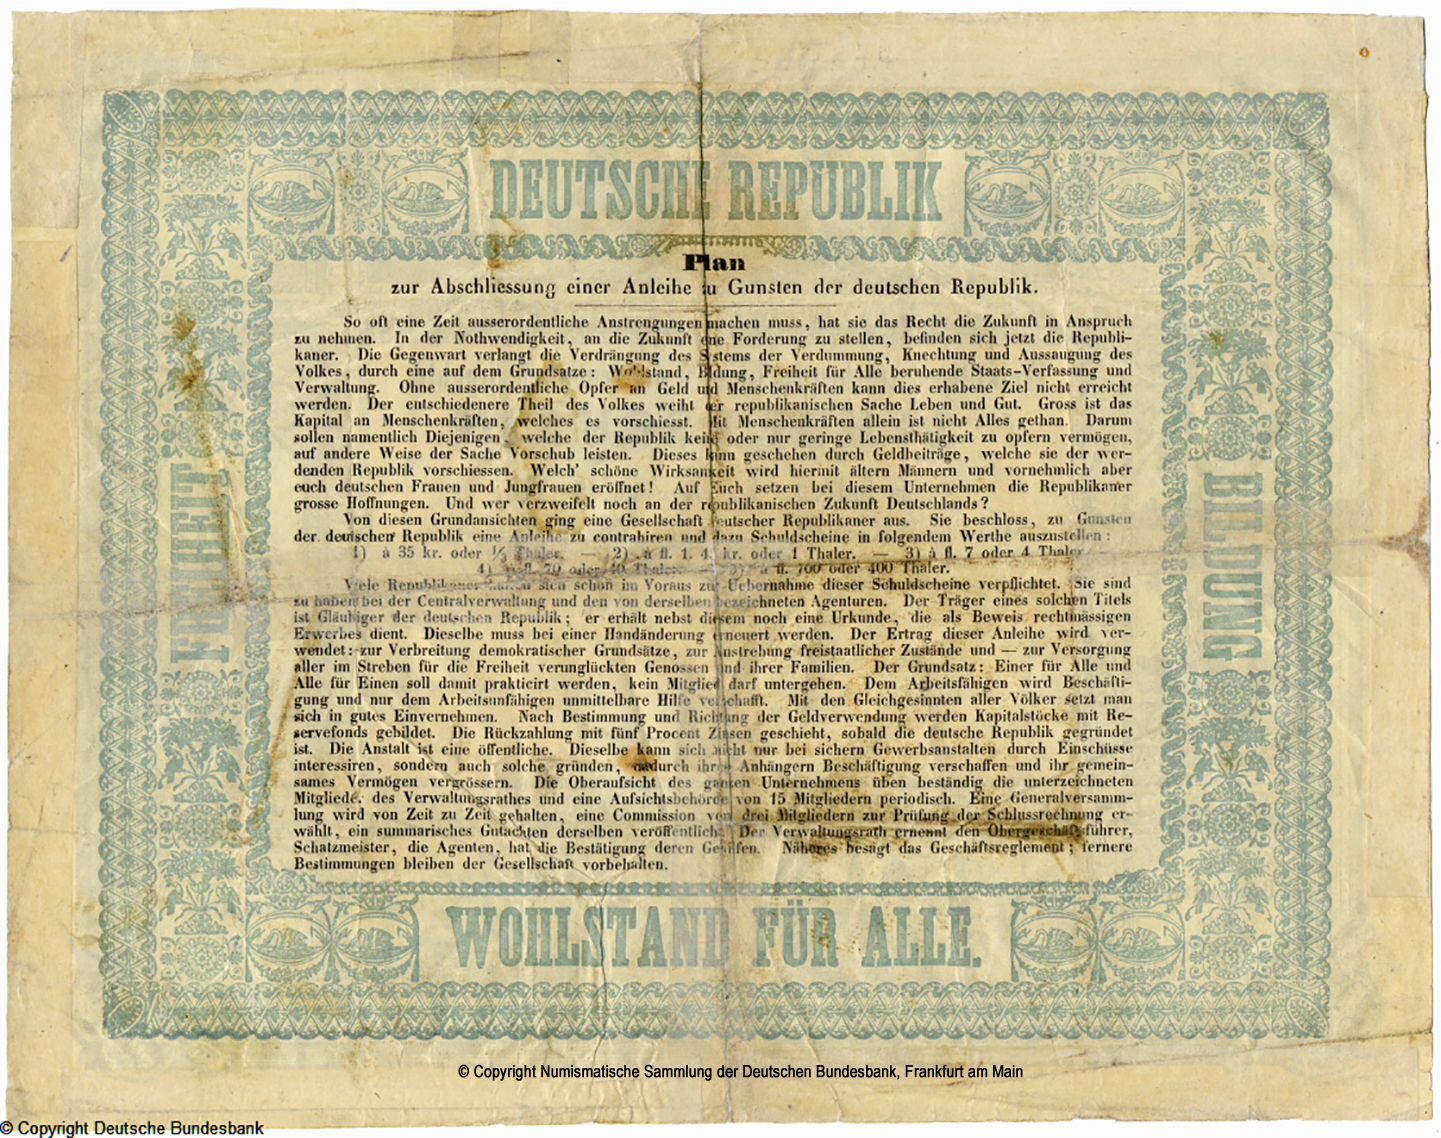 Gesellschaft deutscher Republikaner in der Schweiz Schuldschein 1,45 Gulden oder 1 Taler /01.11.1848